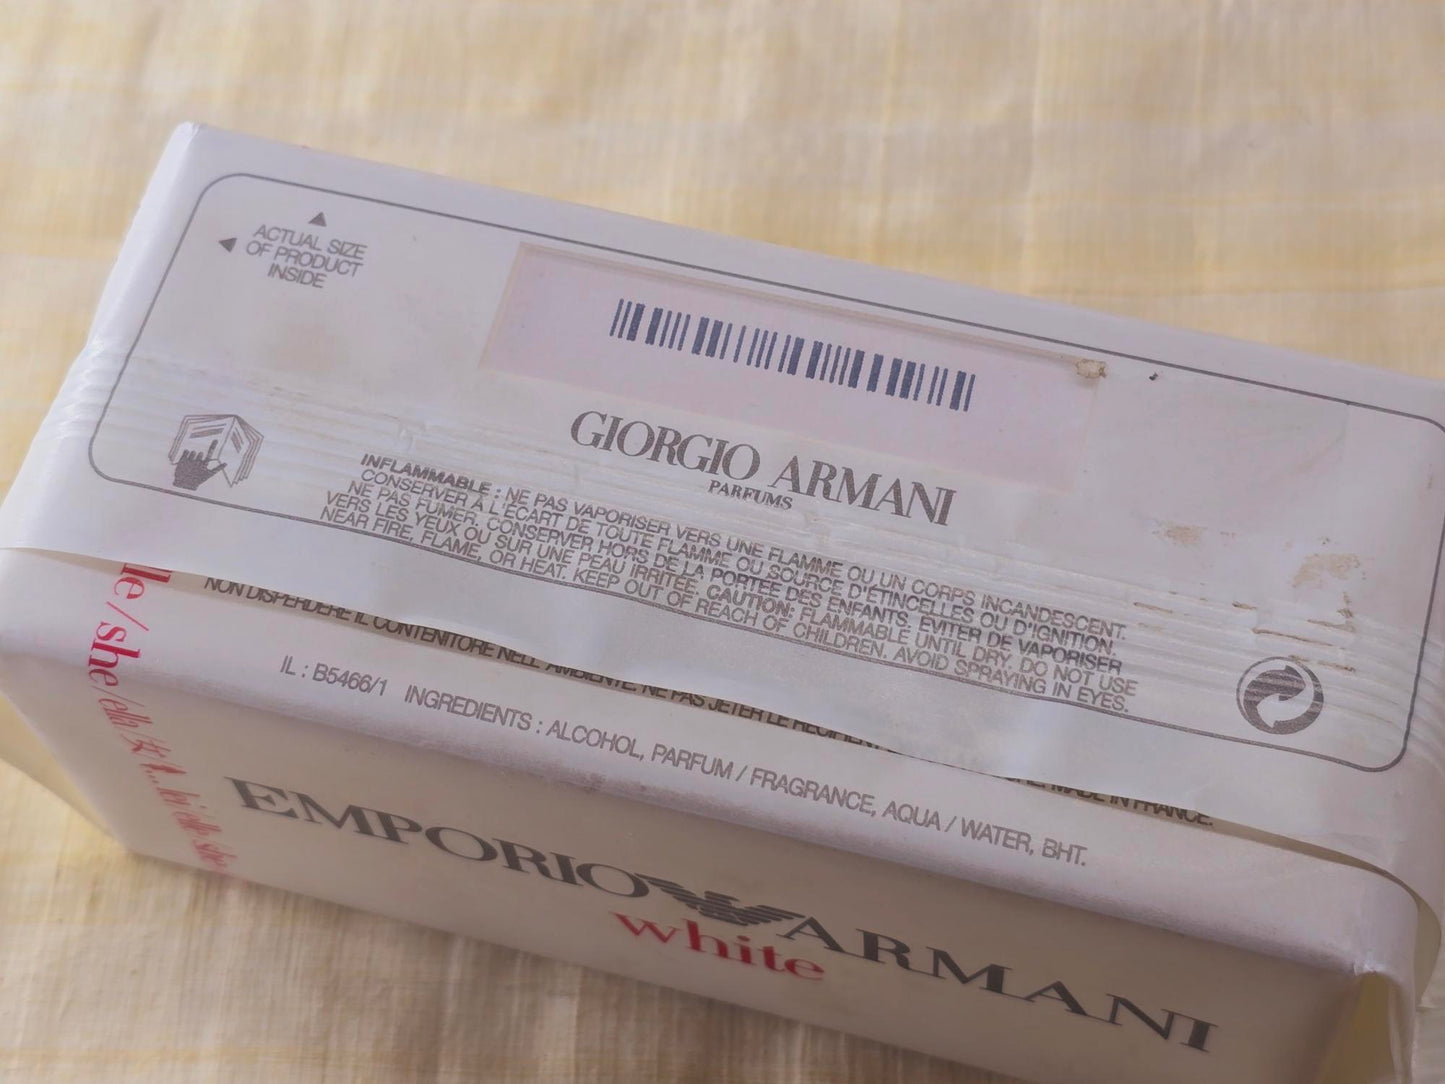 Emporio Armani White For Her Giorgio Armani for women EDT Spray 50 ml 1.7 oz, Vintage, Rare, Sealed